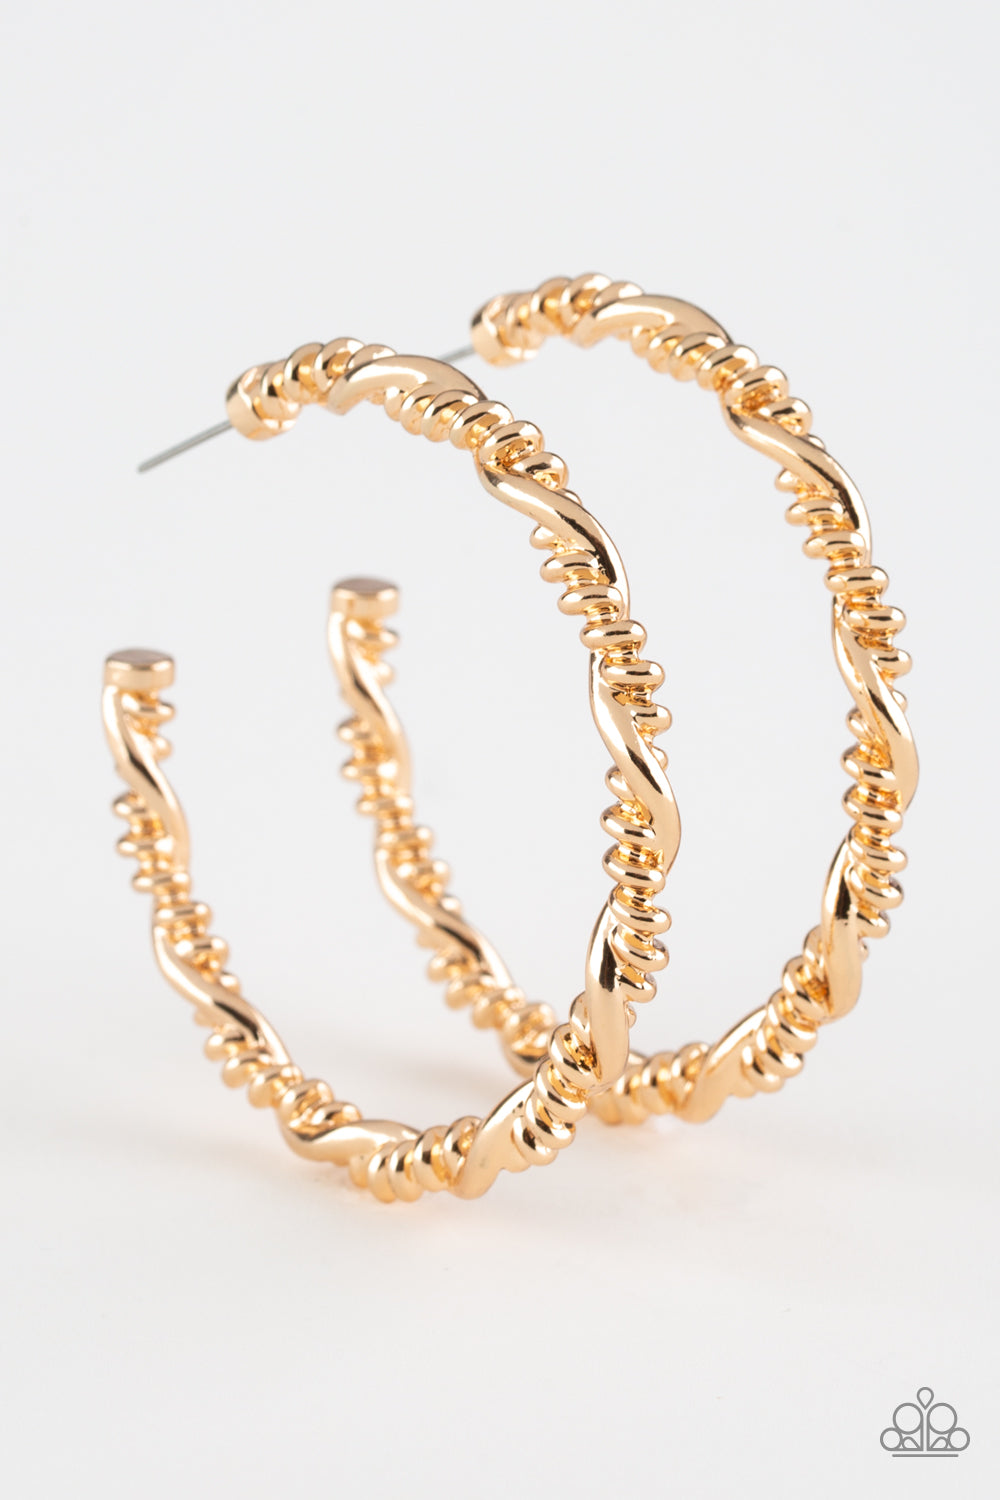 Street Mod - Gold hoop earrings